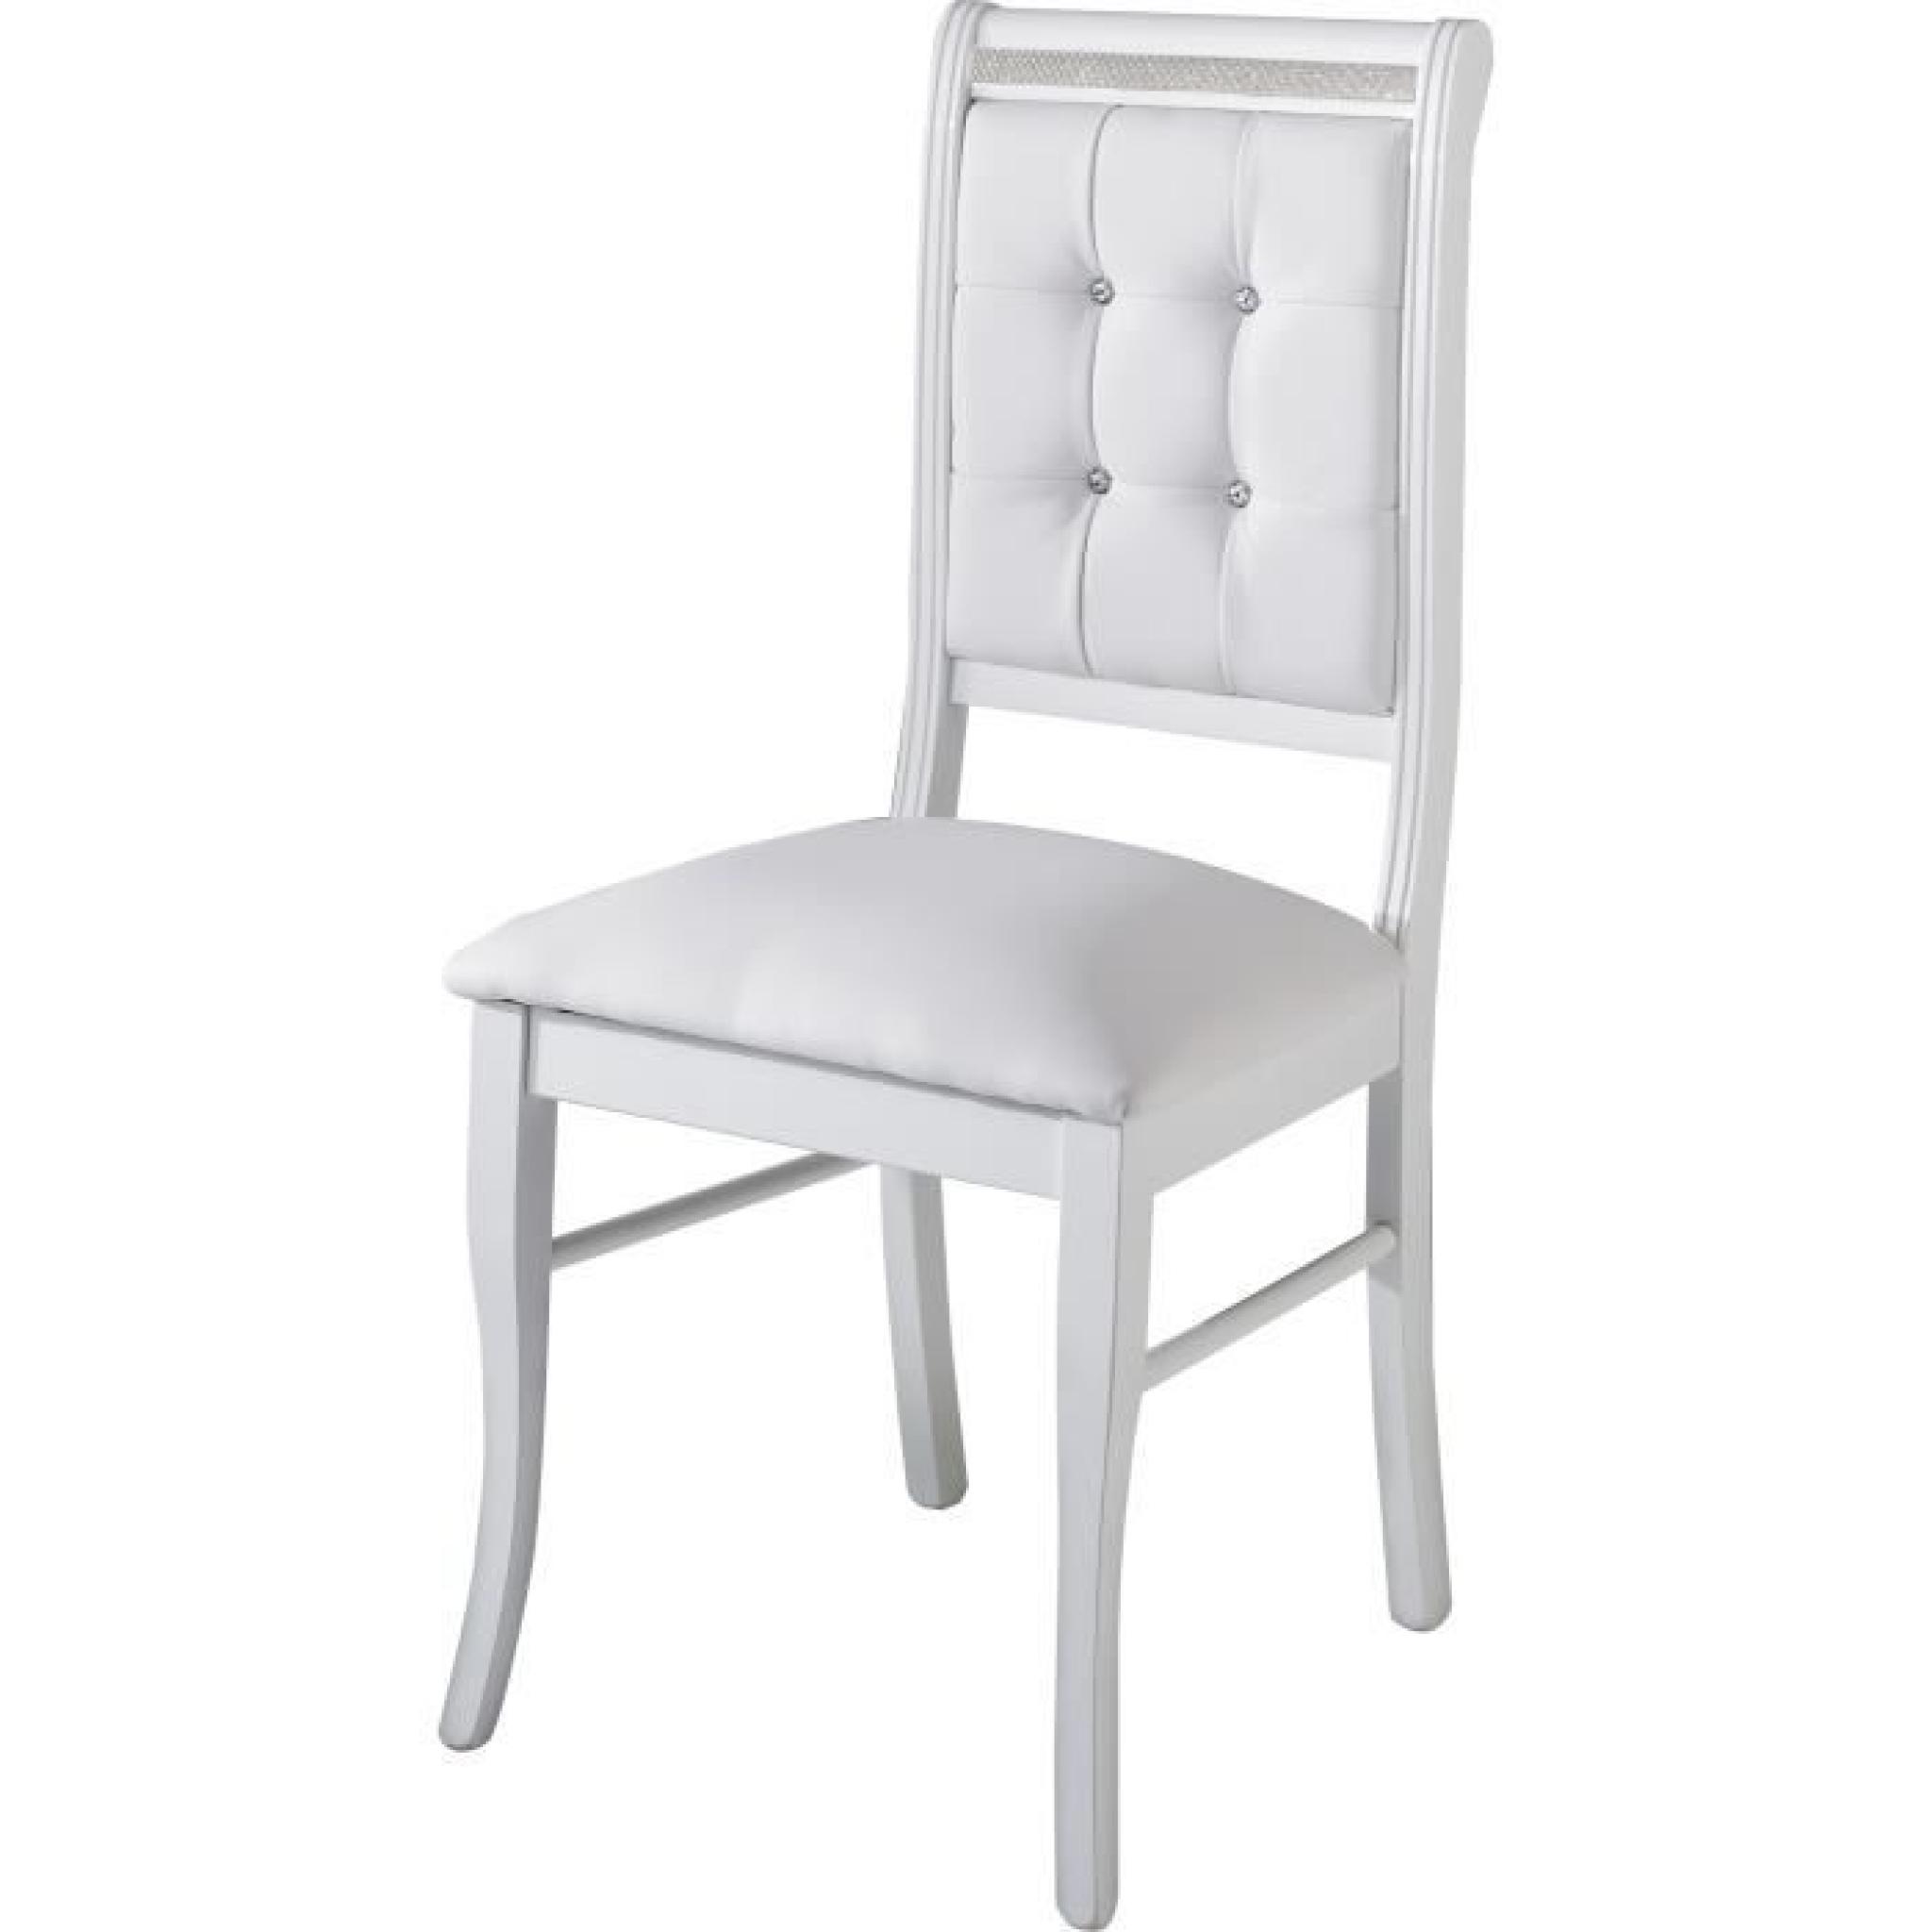 Table à manger 190 cm blanc + 4 chaises ultra design blanc modele Prestige blanc pas cher